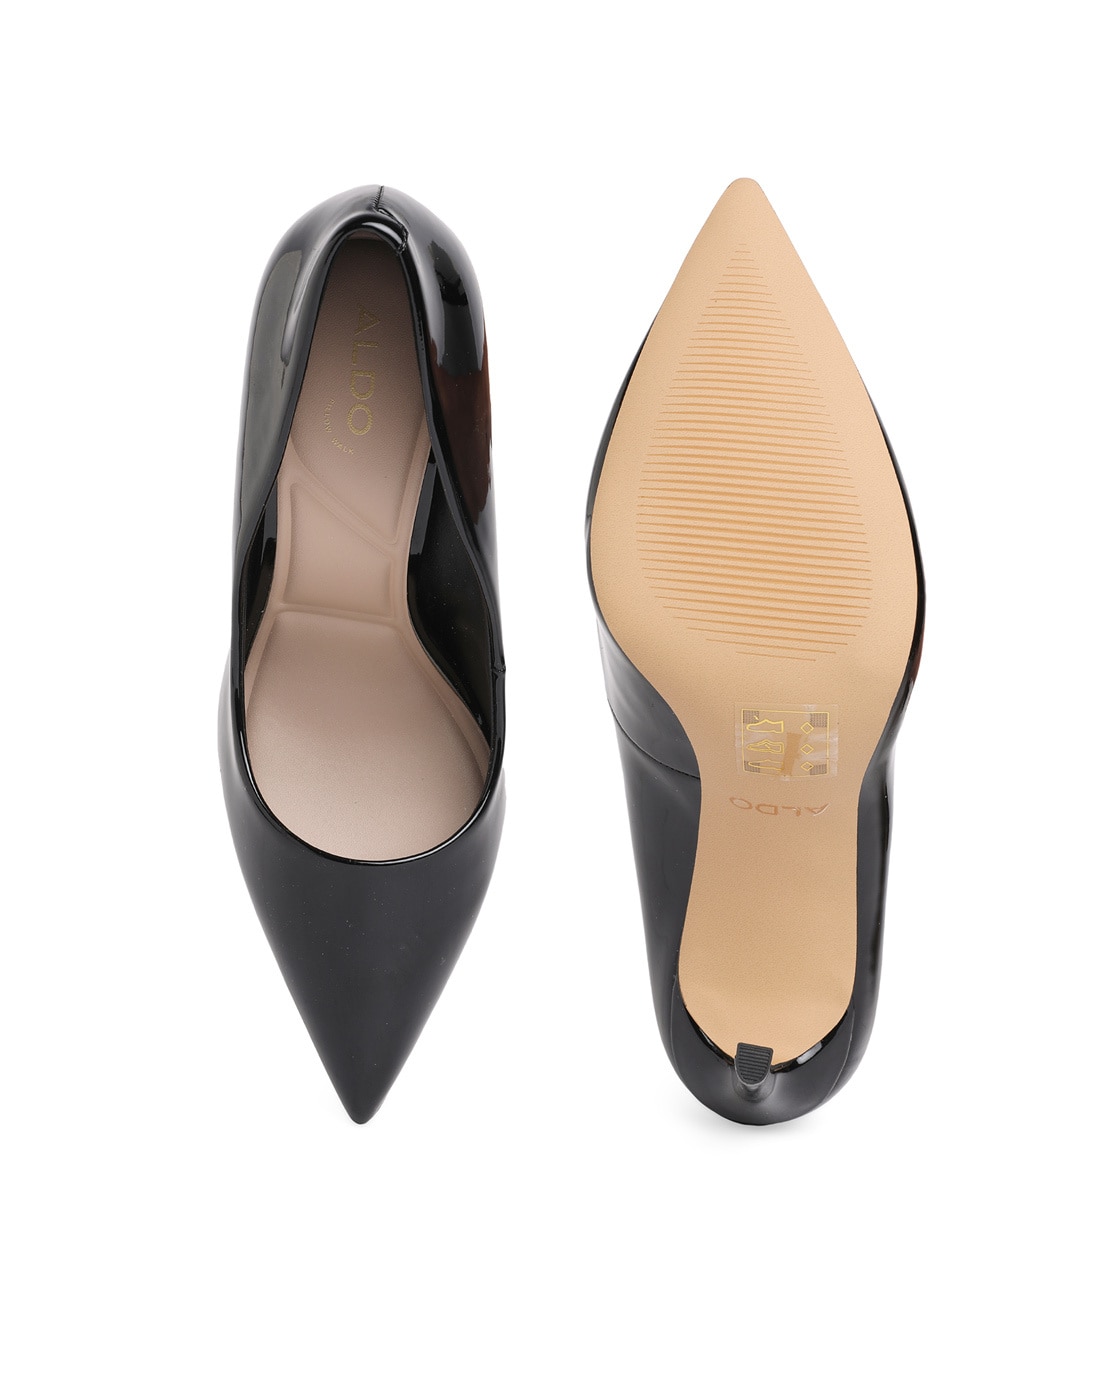 Aldo Choewia Floral Ponty Heels | Pointed heels, Black shoes heels, Floral  heels